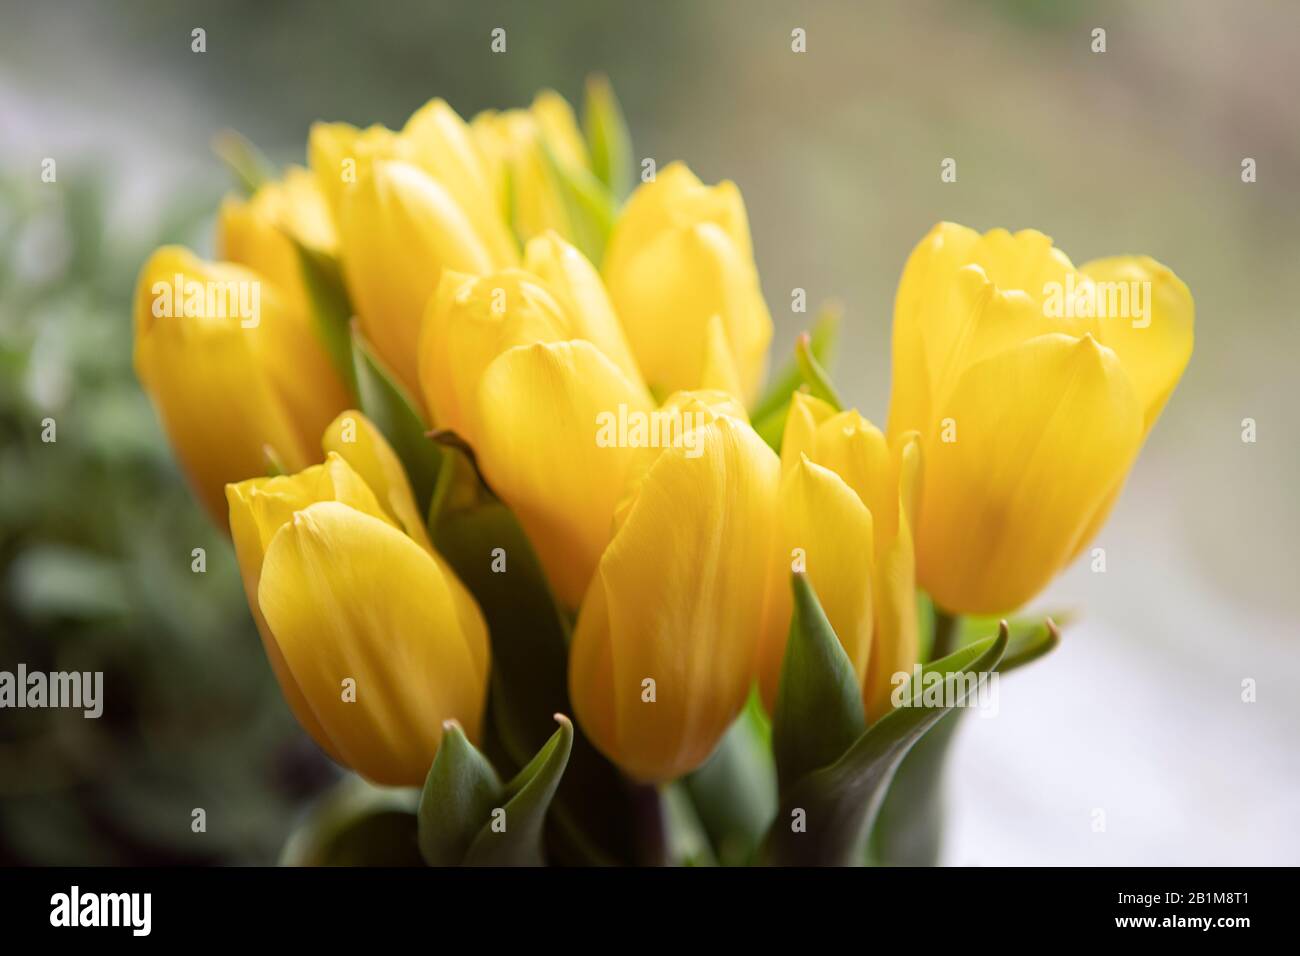 Blumenstrauß mit frischen Tulpen im Nahbereich, Hausdekor, leuchtende gelbe Farbe. Stockfoto